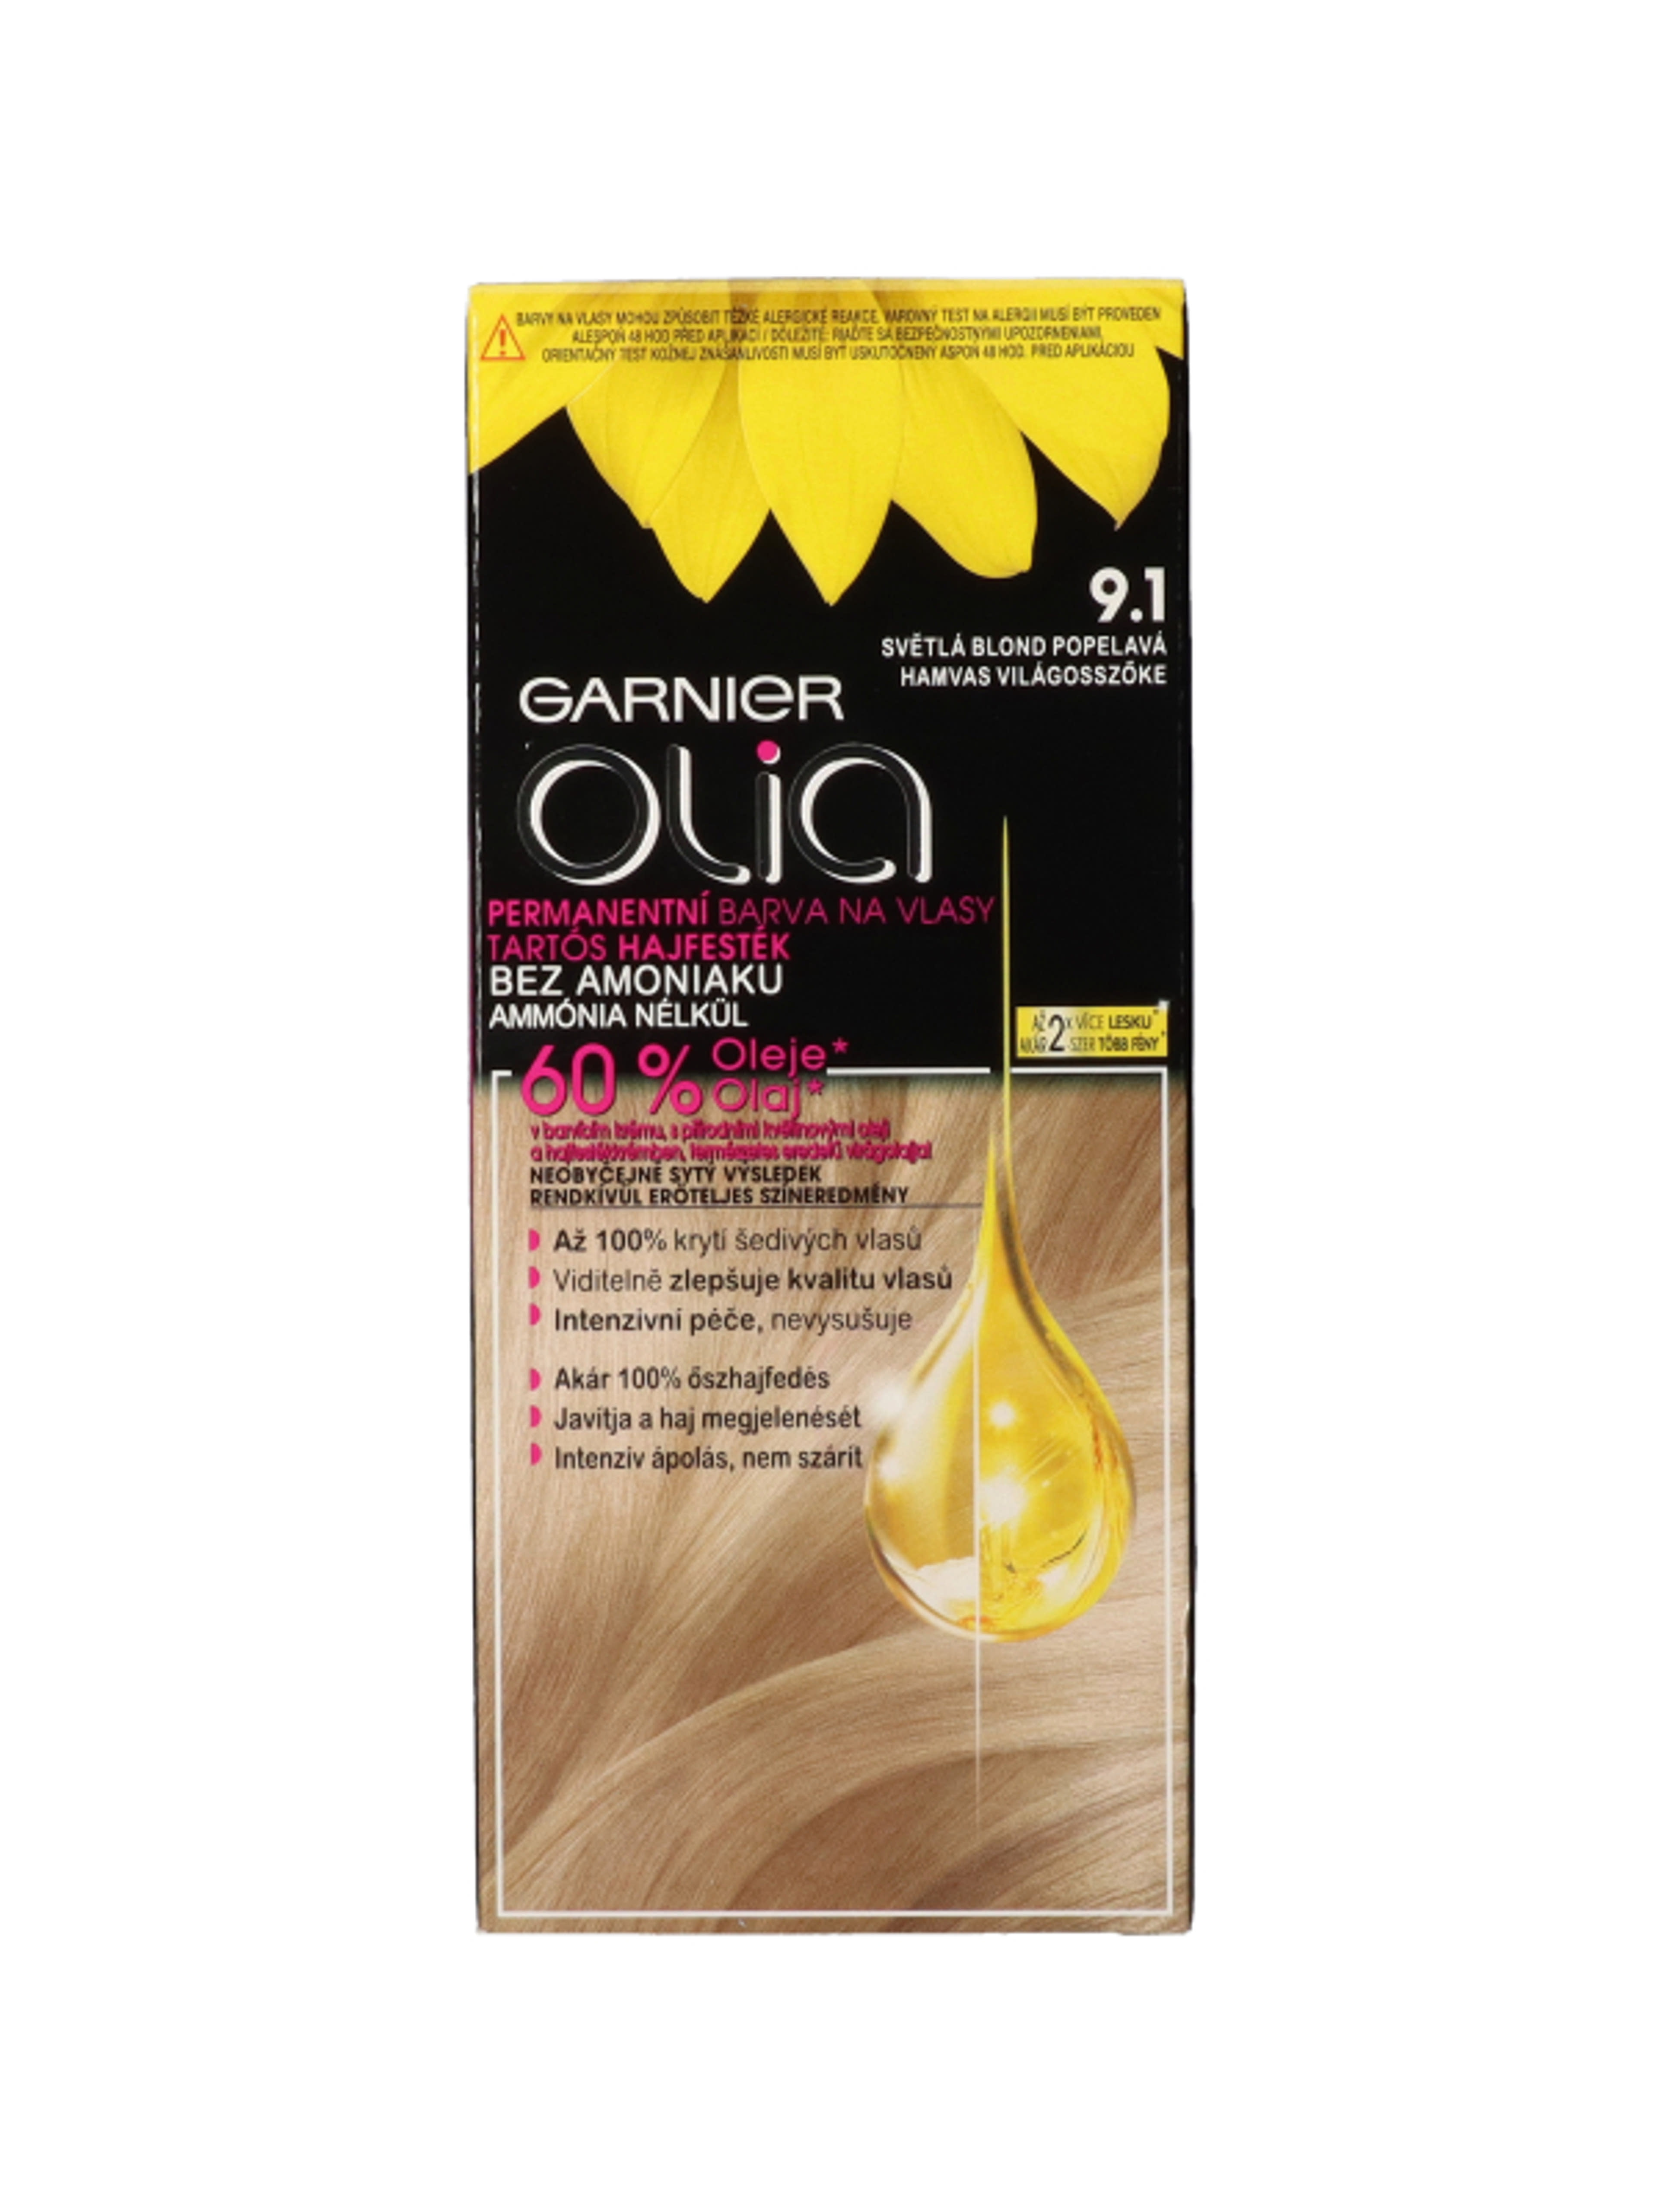 Garnier Olia tartós hajfesték 9.1 Hamvas világosszőke - 1 db-1